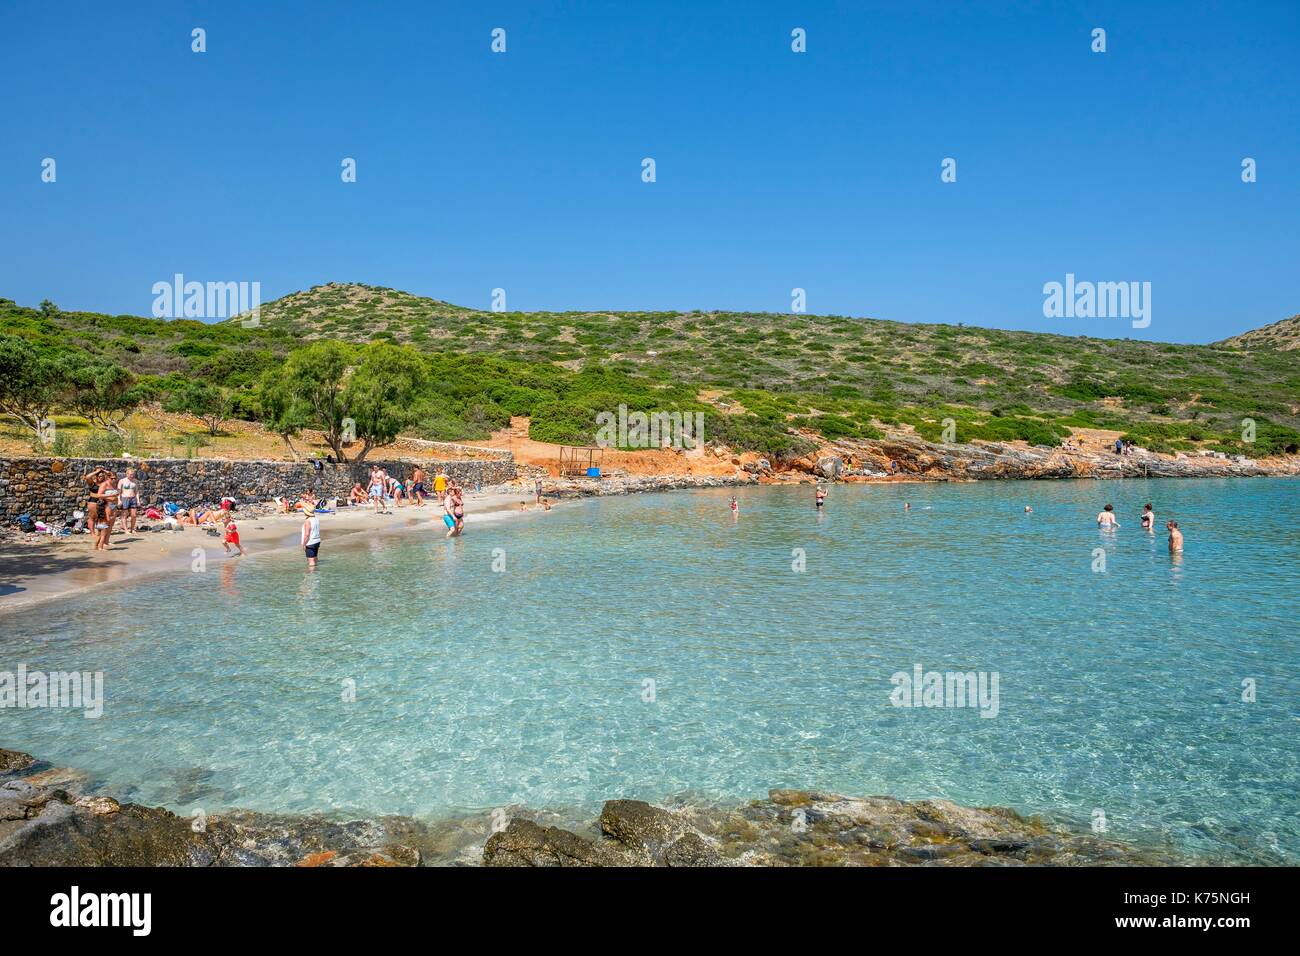 Grèce, Crete, Lassithi orientale district, la baie de Mirabello, Elounda, la péninsule de Spinalonga, plage Kolokitha Banque D'Images